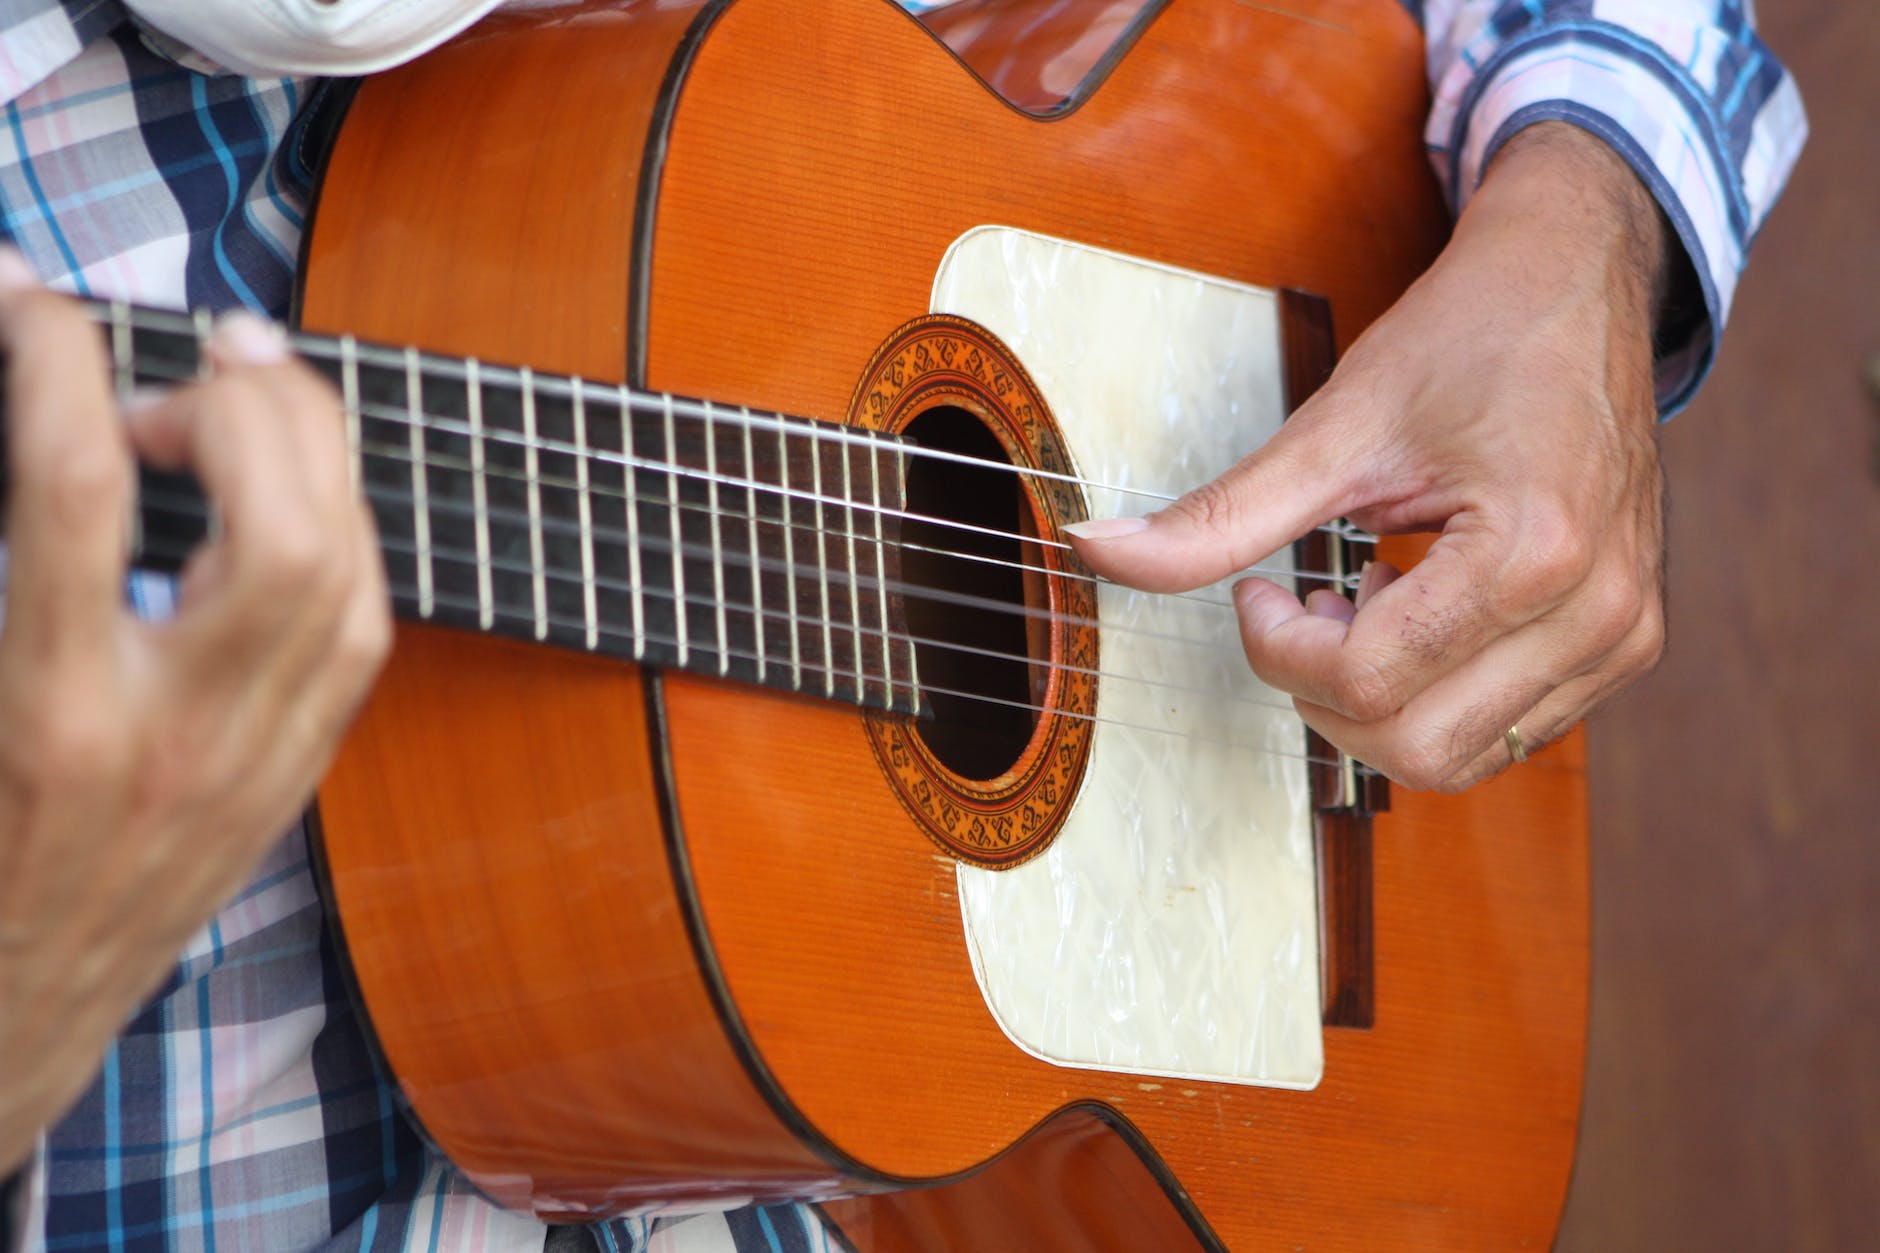 אדם מנגן בגיטרה אקוסטית חומה